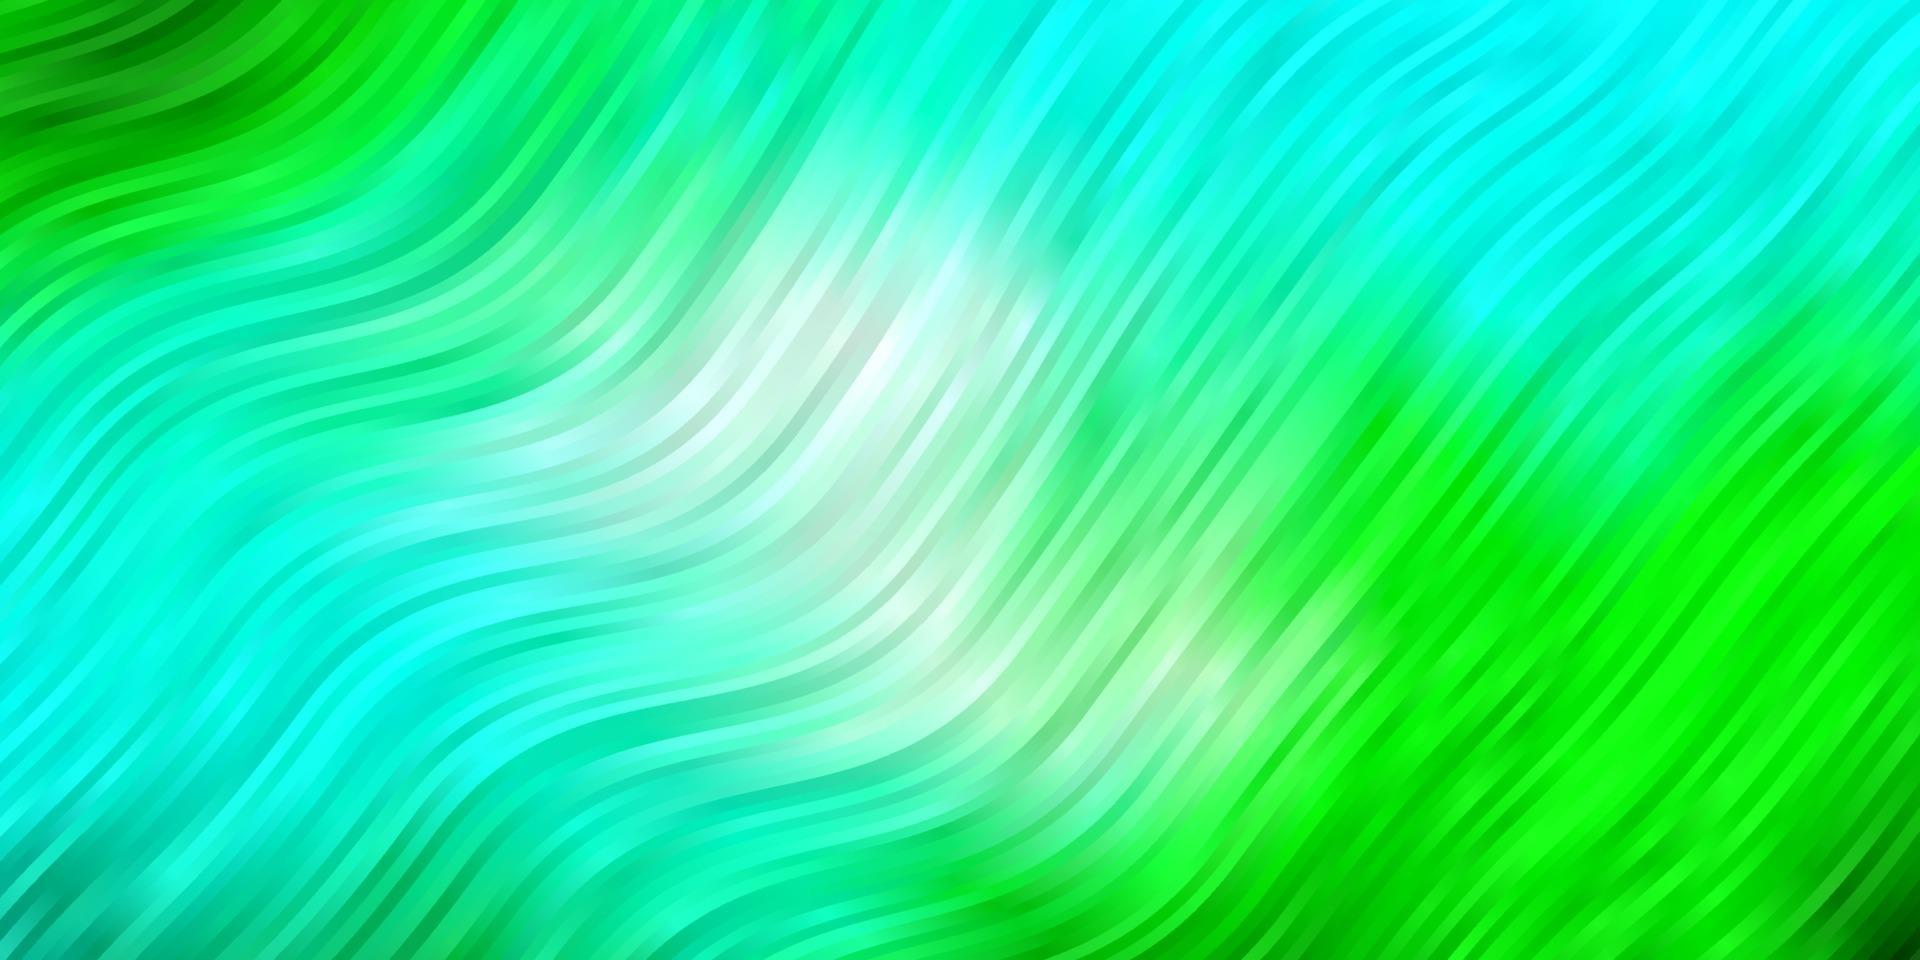 textura de vector azul claro, verde con curvas.